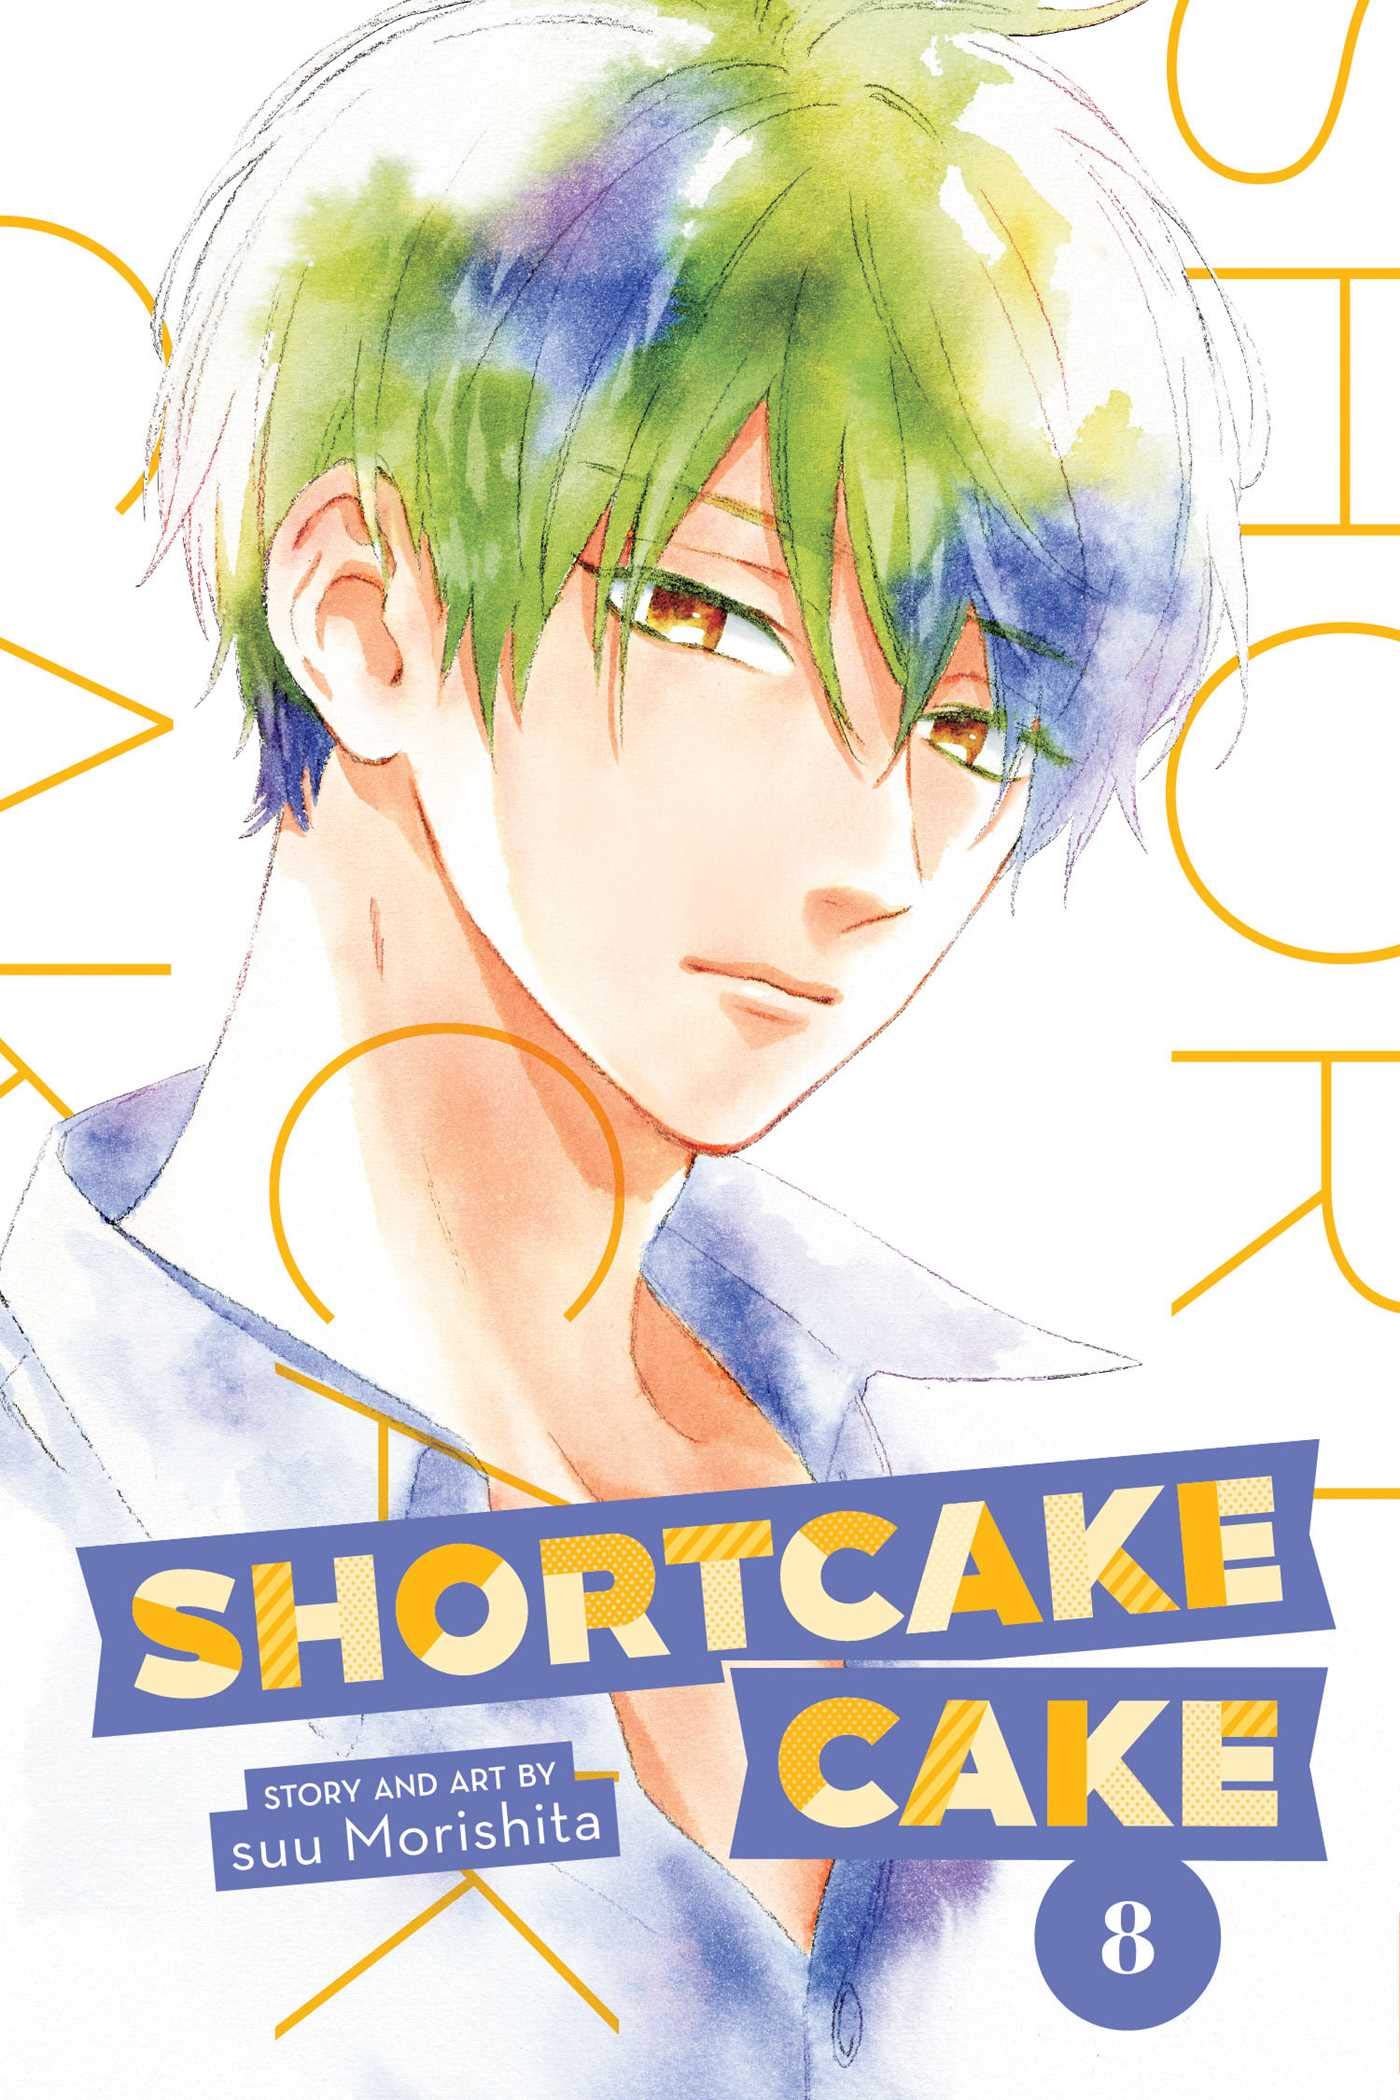 Shortcake Cake, Vol. 8 (8)